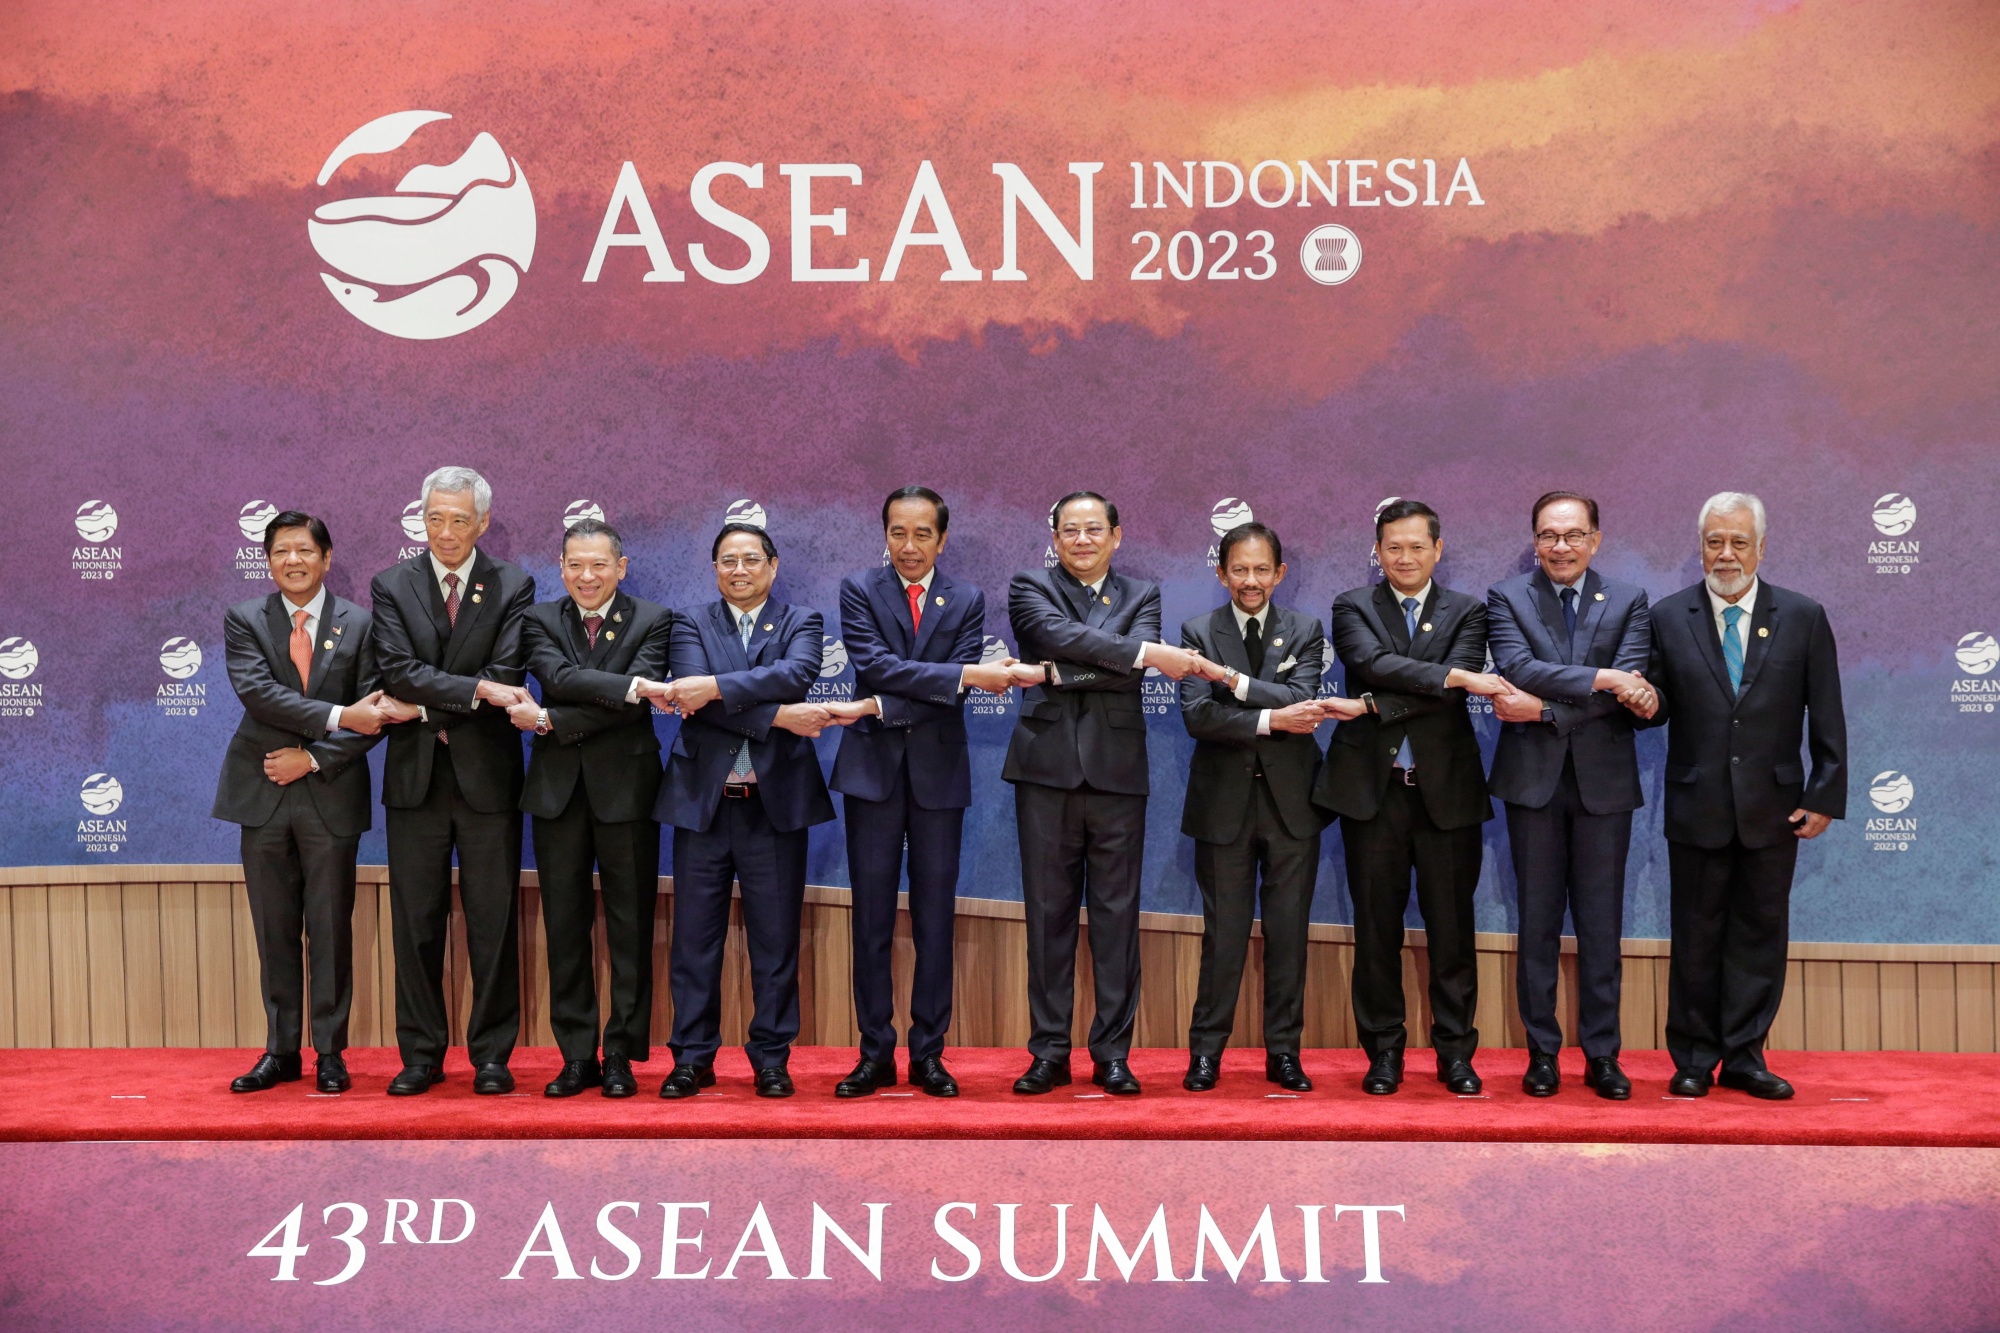 Asean News China Premier Makes Debut at Summit With US VP Kamala Harris Bloomberg